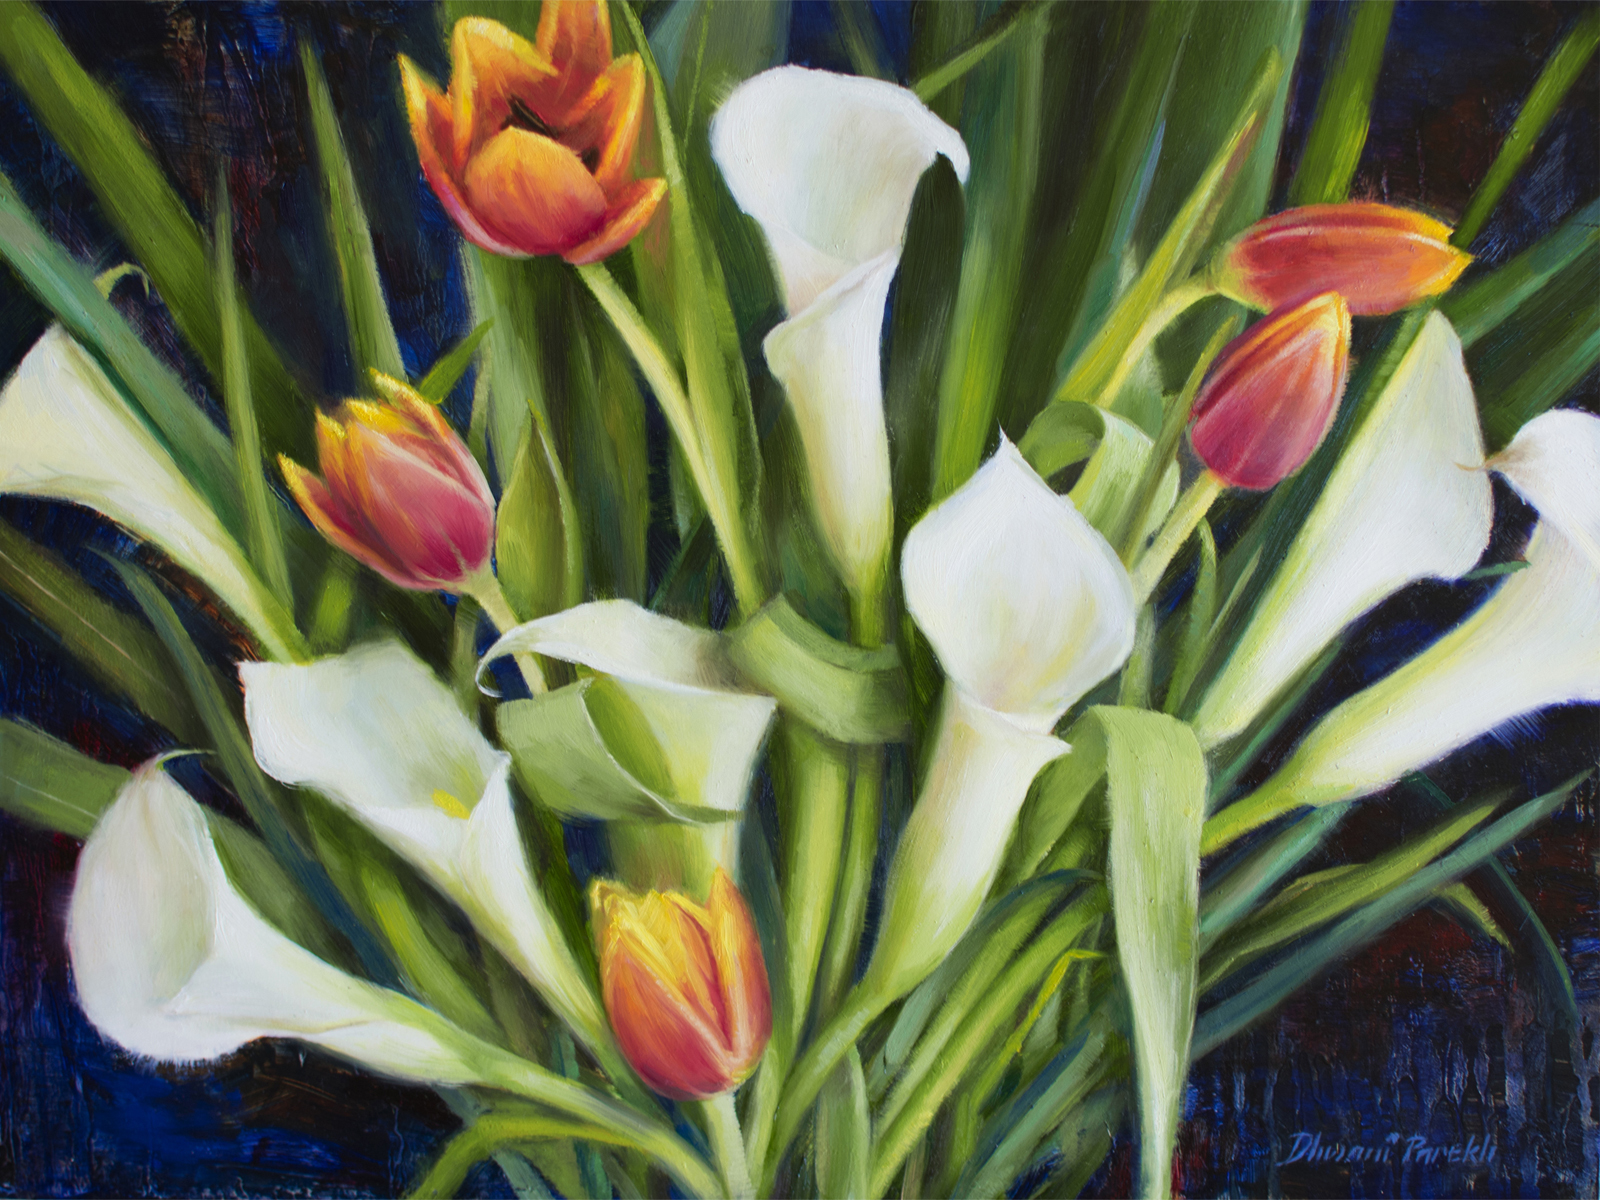  Midnight Bloom  16 x 12  Oil on Panel 